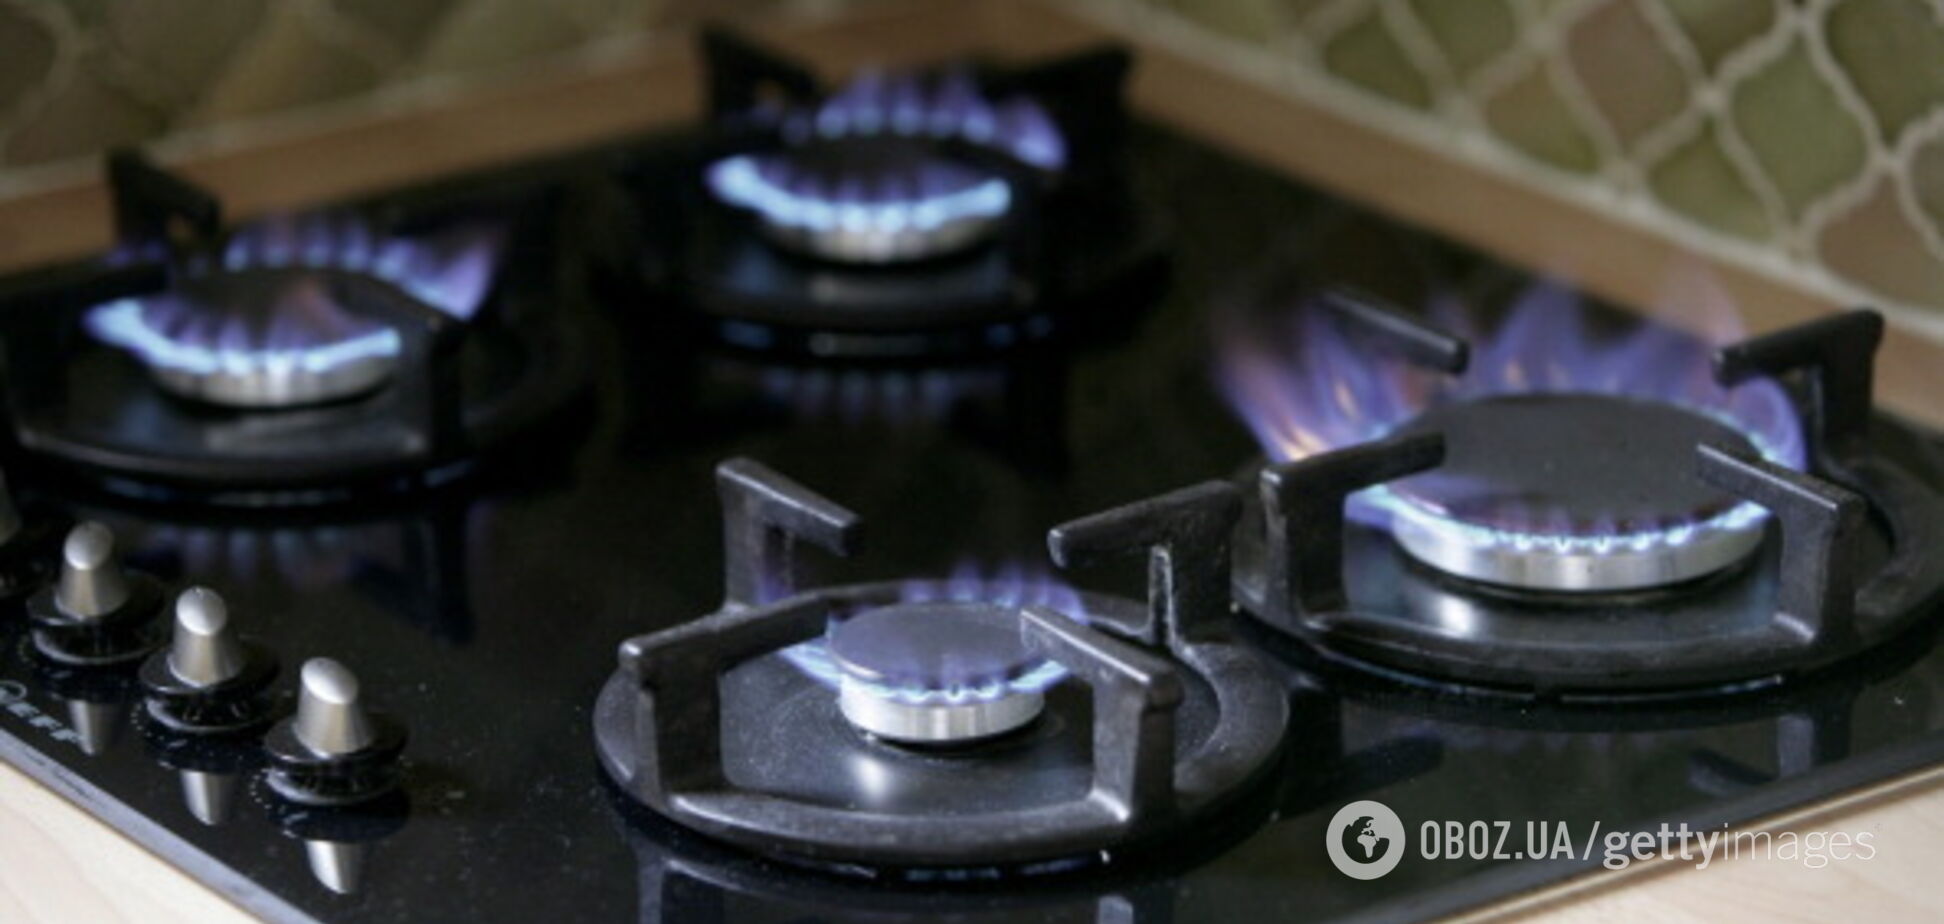 Бесплатные газовые счетчики украинцам установит не ''Нафтогаз'': что известно